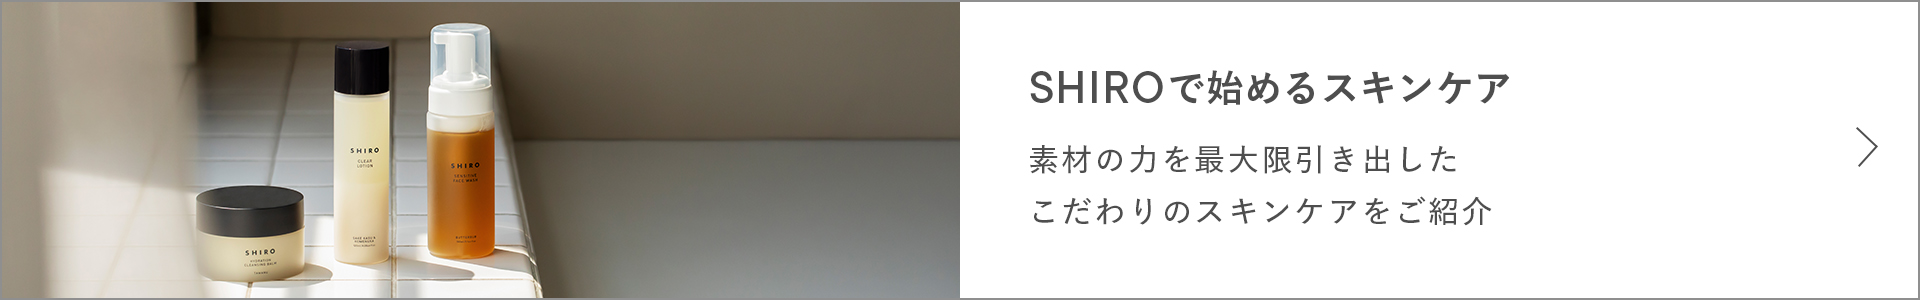 SHIROスキンケアプログラム